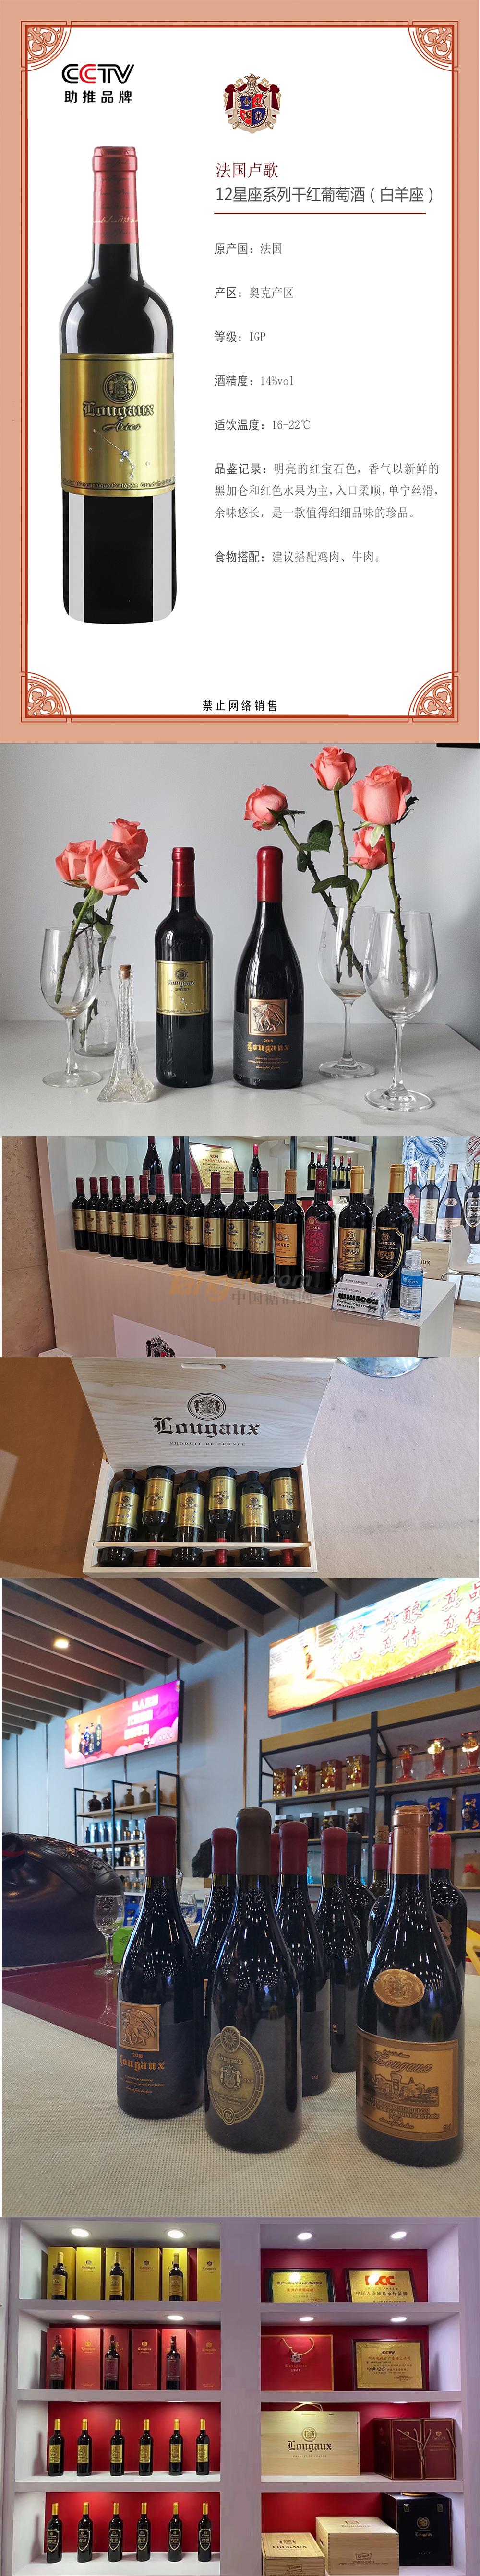 法国卢歌12星座系列干红葡萄酒（白羊座）产品介绍.jpg